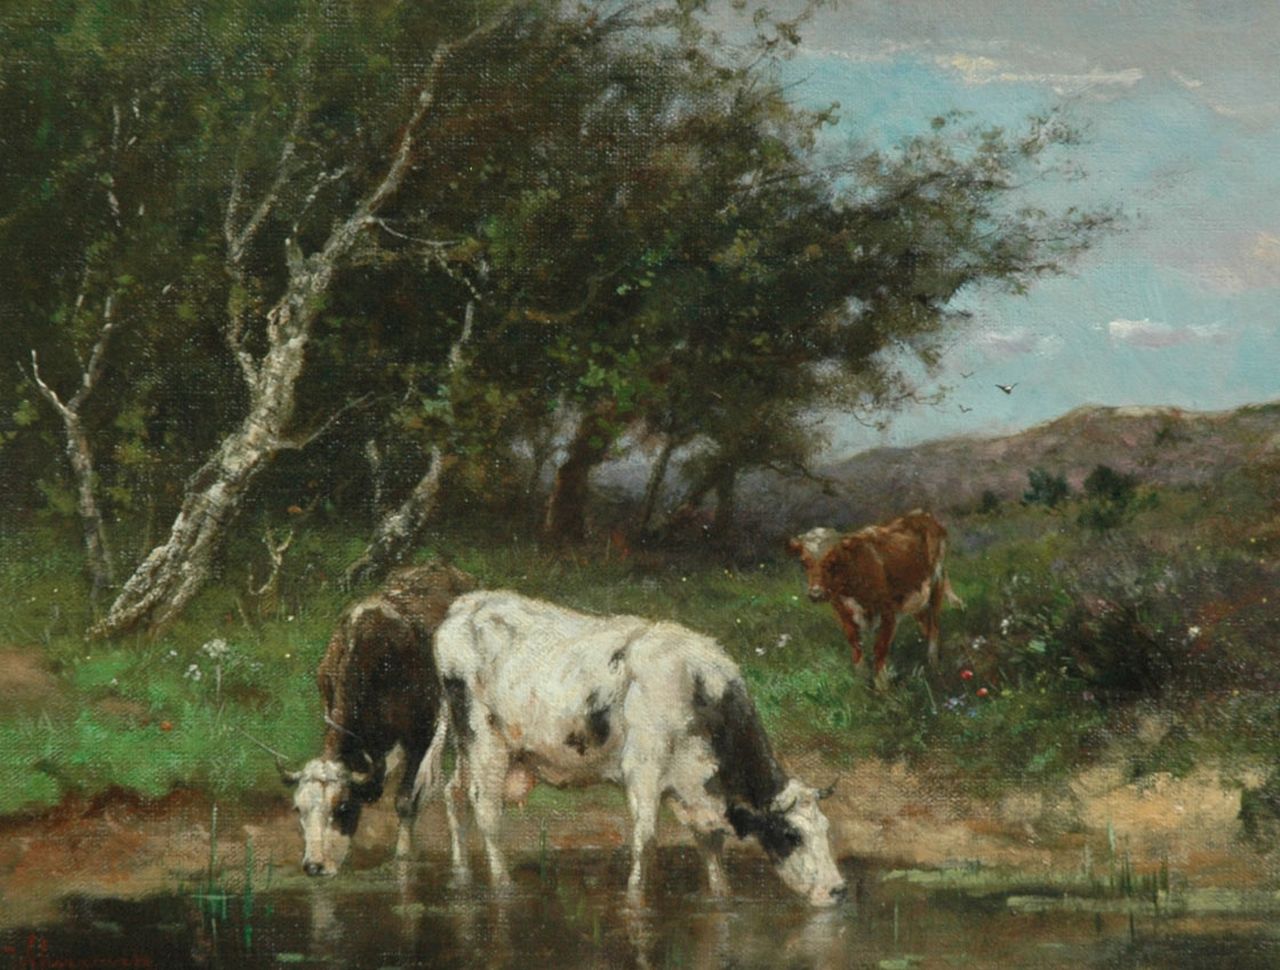 Scherrewitz J.F.C.  | Johan Frederik Cornelis Scherrewitz, Watering cows, oil on canvas 30.5 x 40.2 cm, signed l.l.